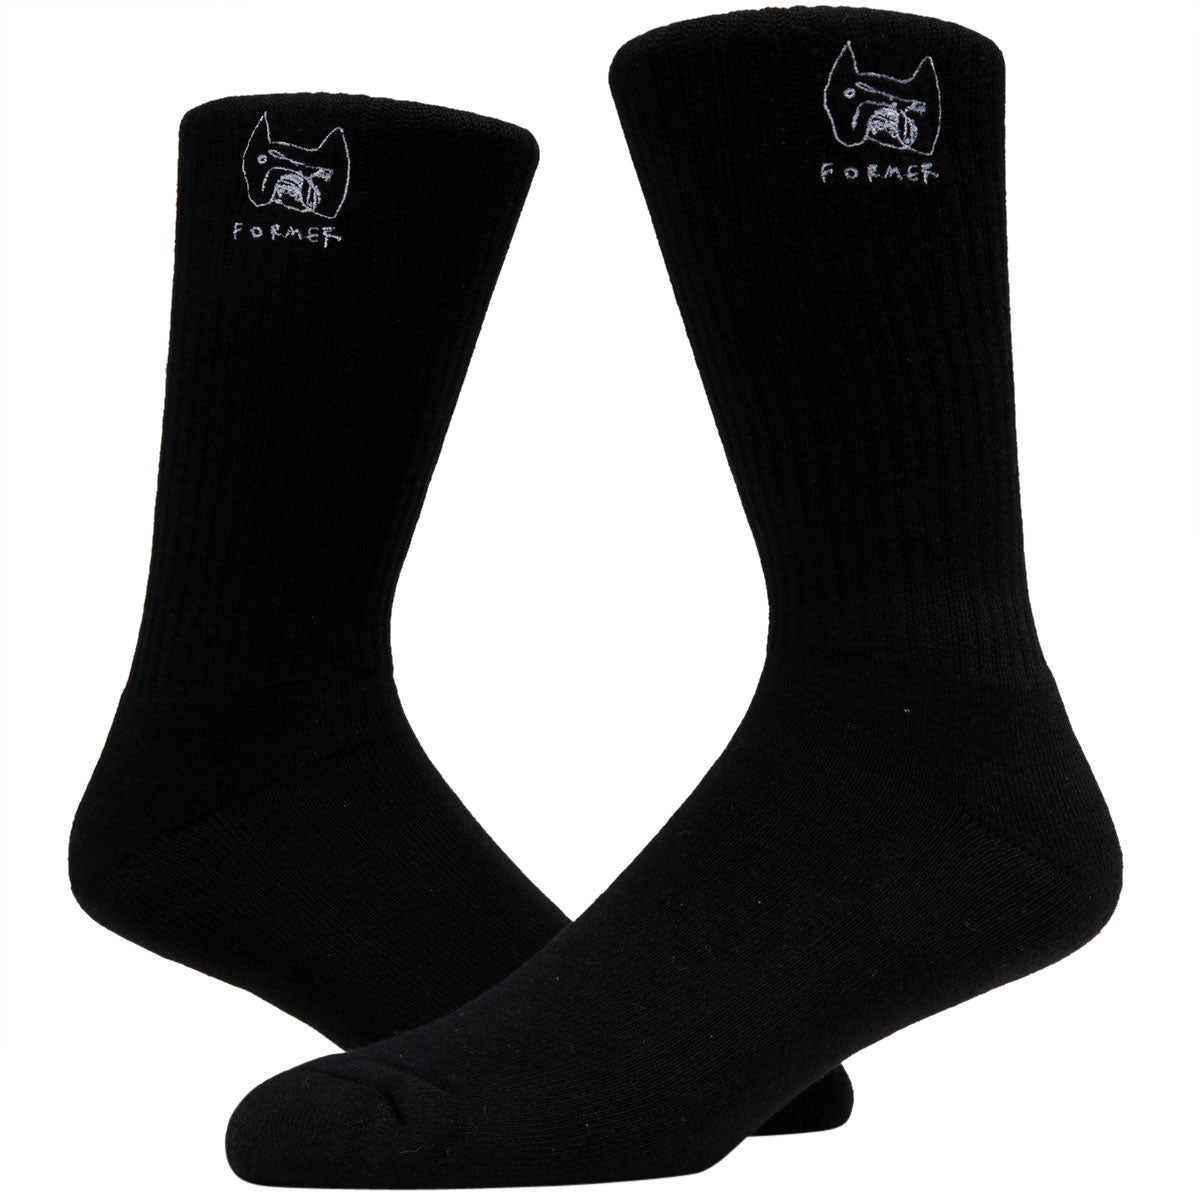 Former Pound Socks - Black image 2